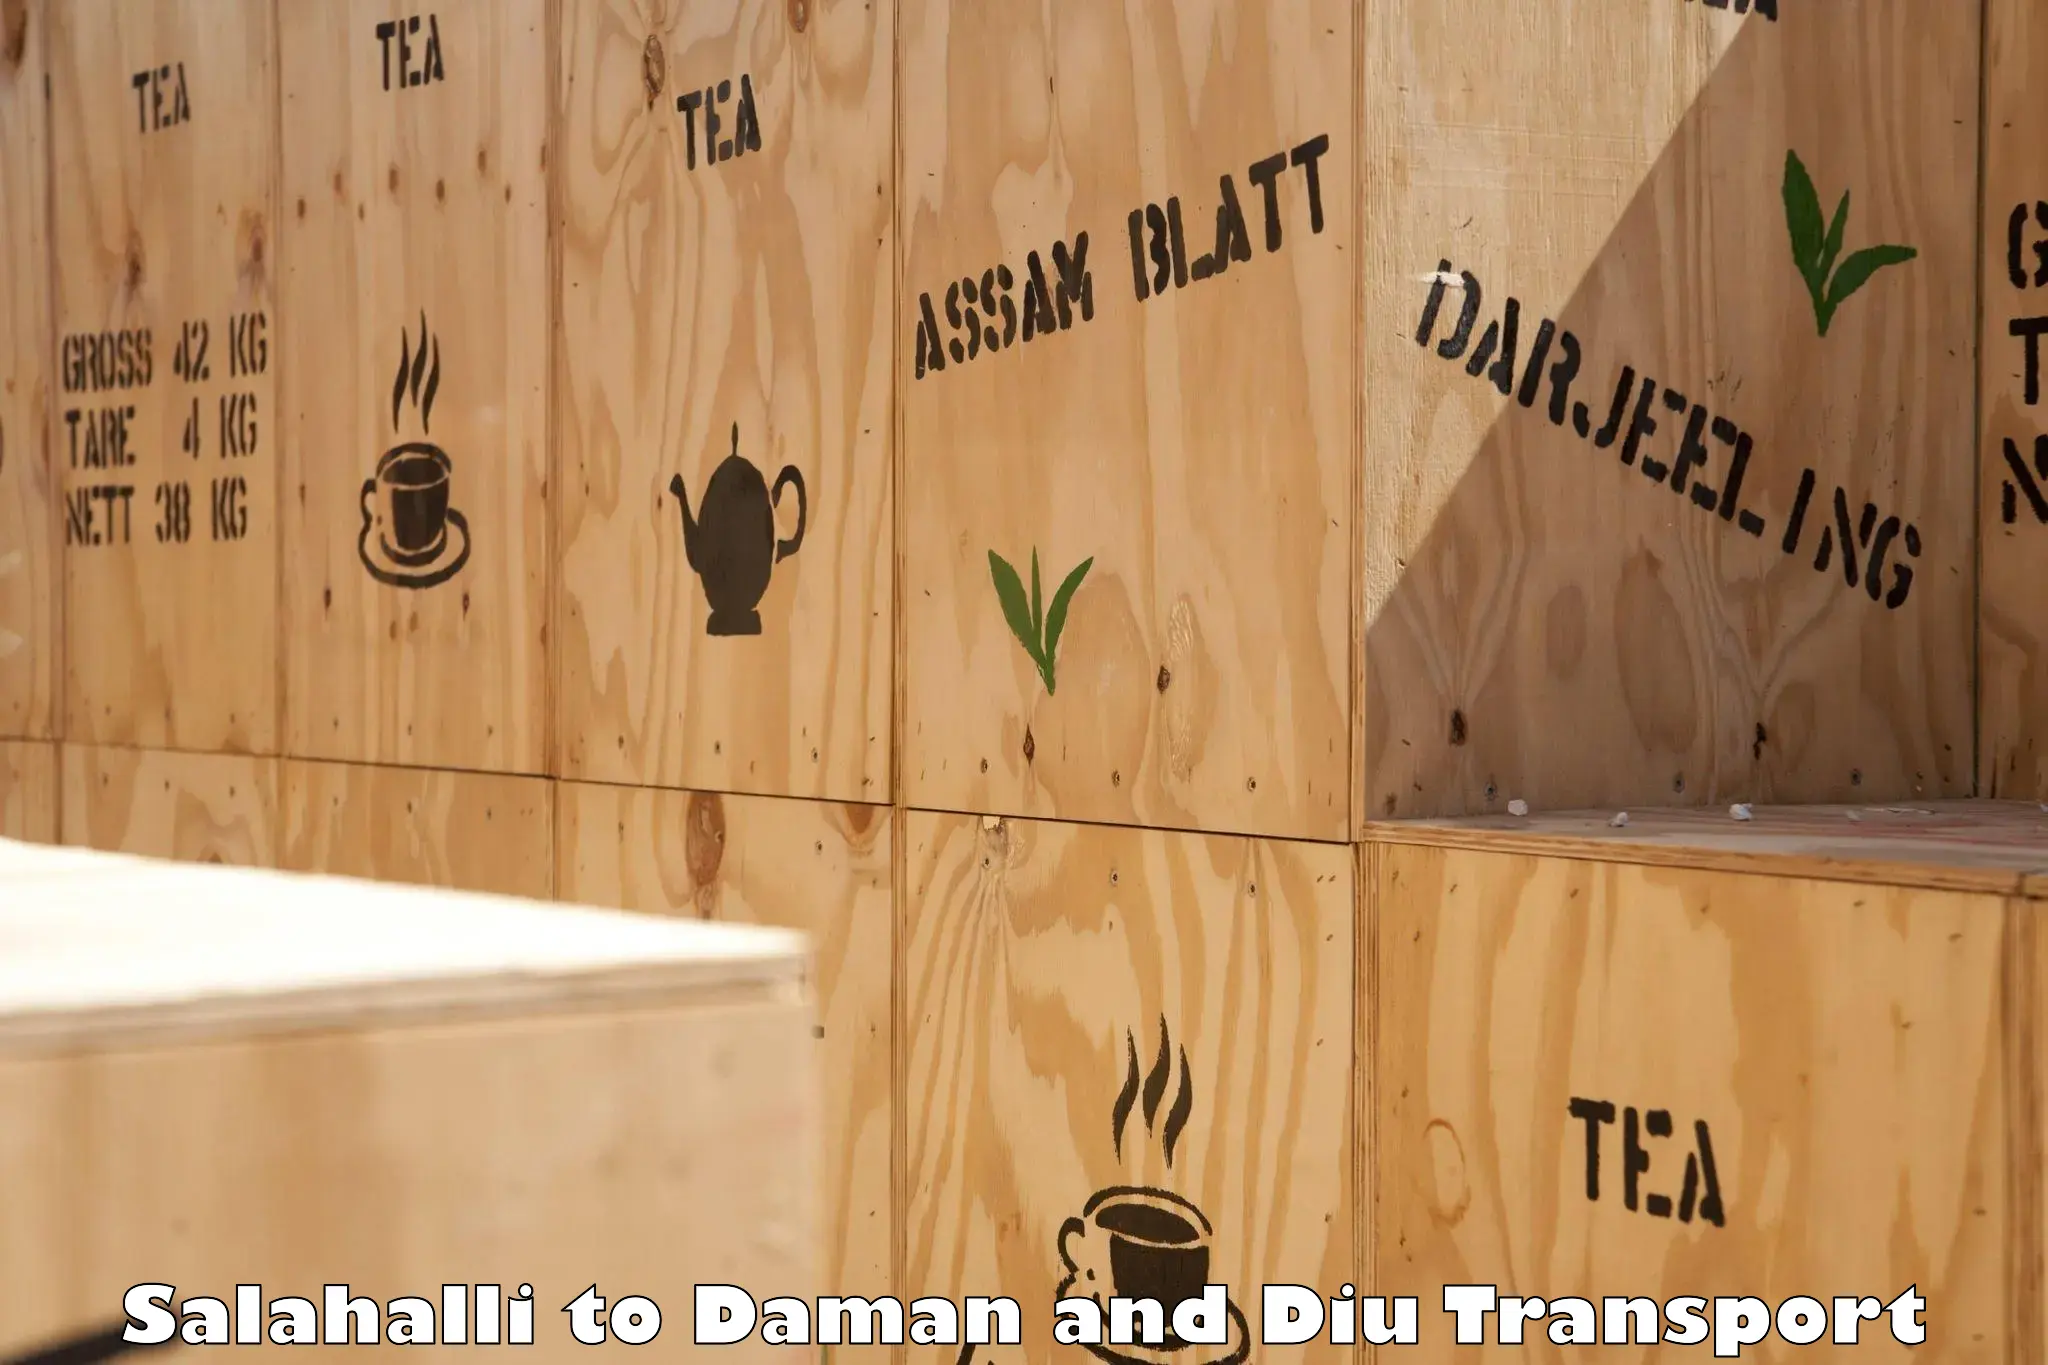 Cargo transport services Salahalli to Daman and Diu